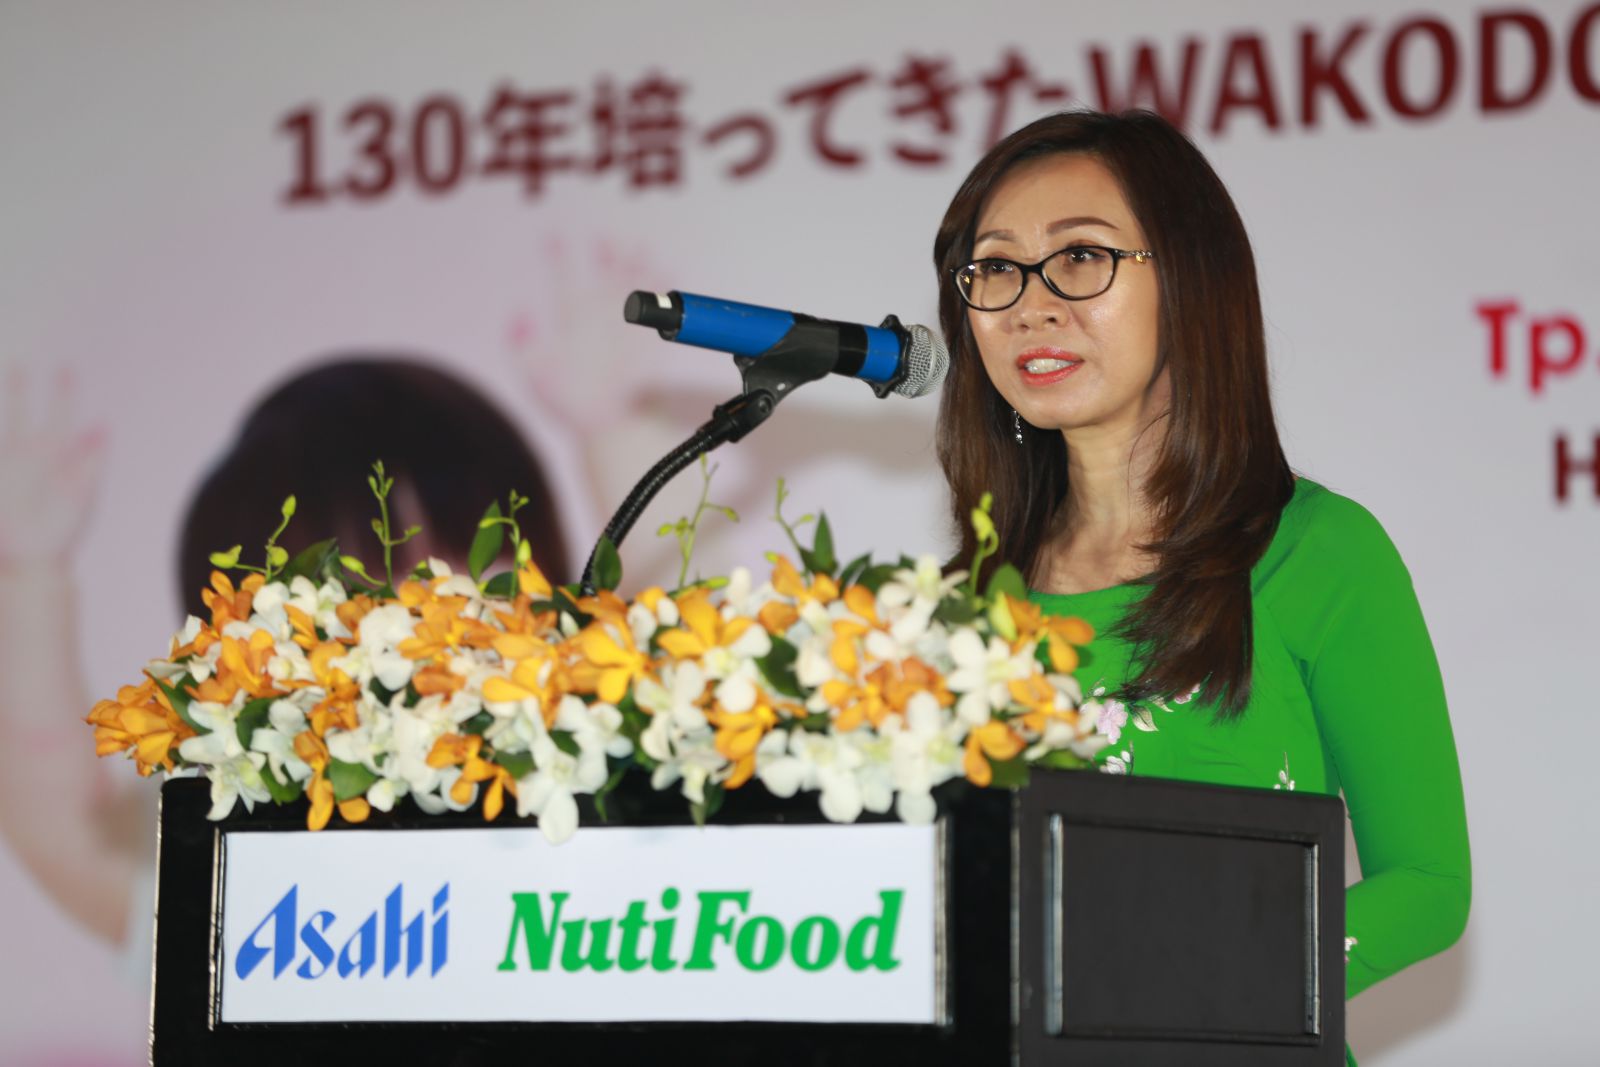 Bà Trần Thị Lệ -Tổng giám đốc công ty TNHH Asiha NutiFood phát biểu tại công bố thành lập công ty  liên doanh hợp  Asahi NutiFood.